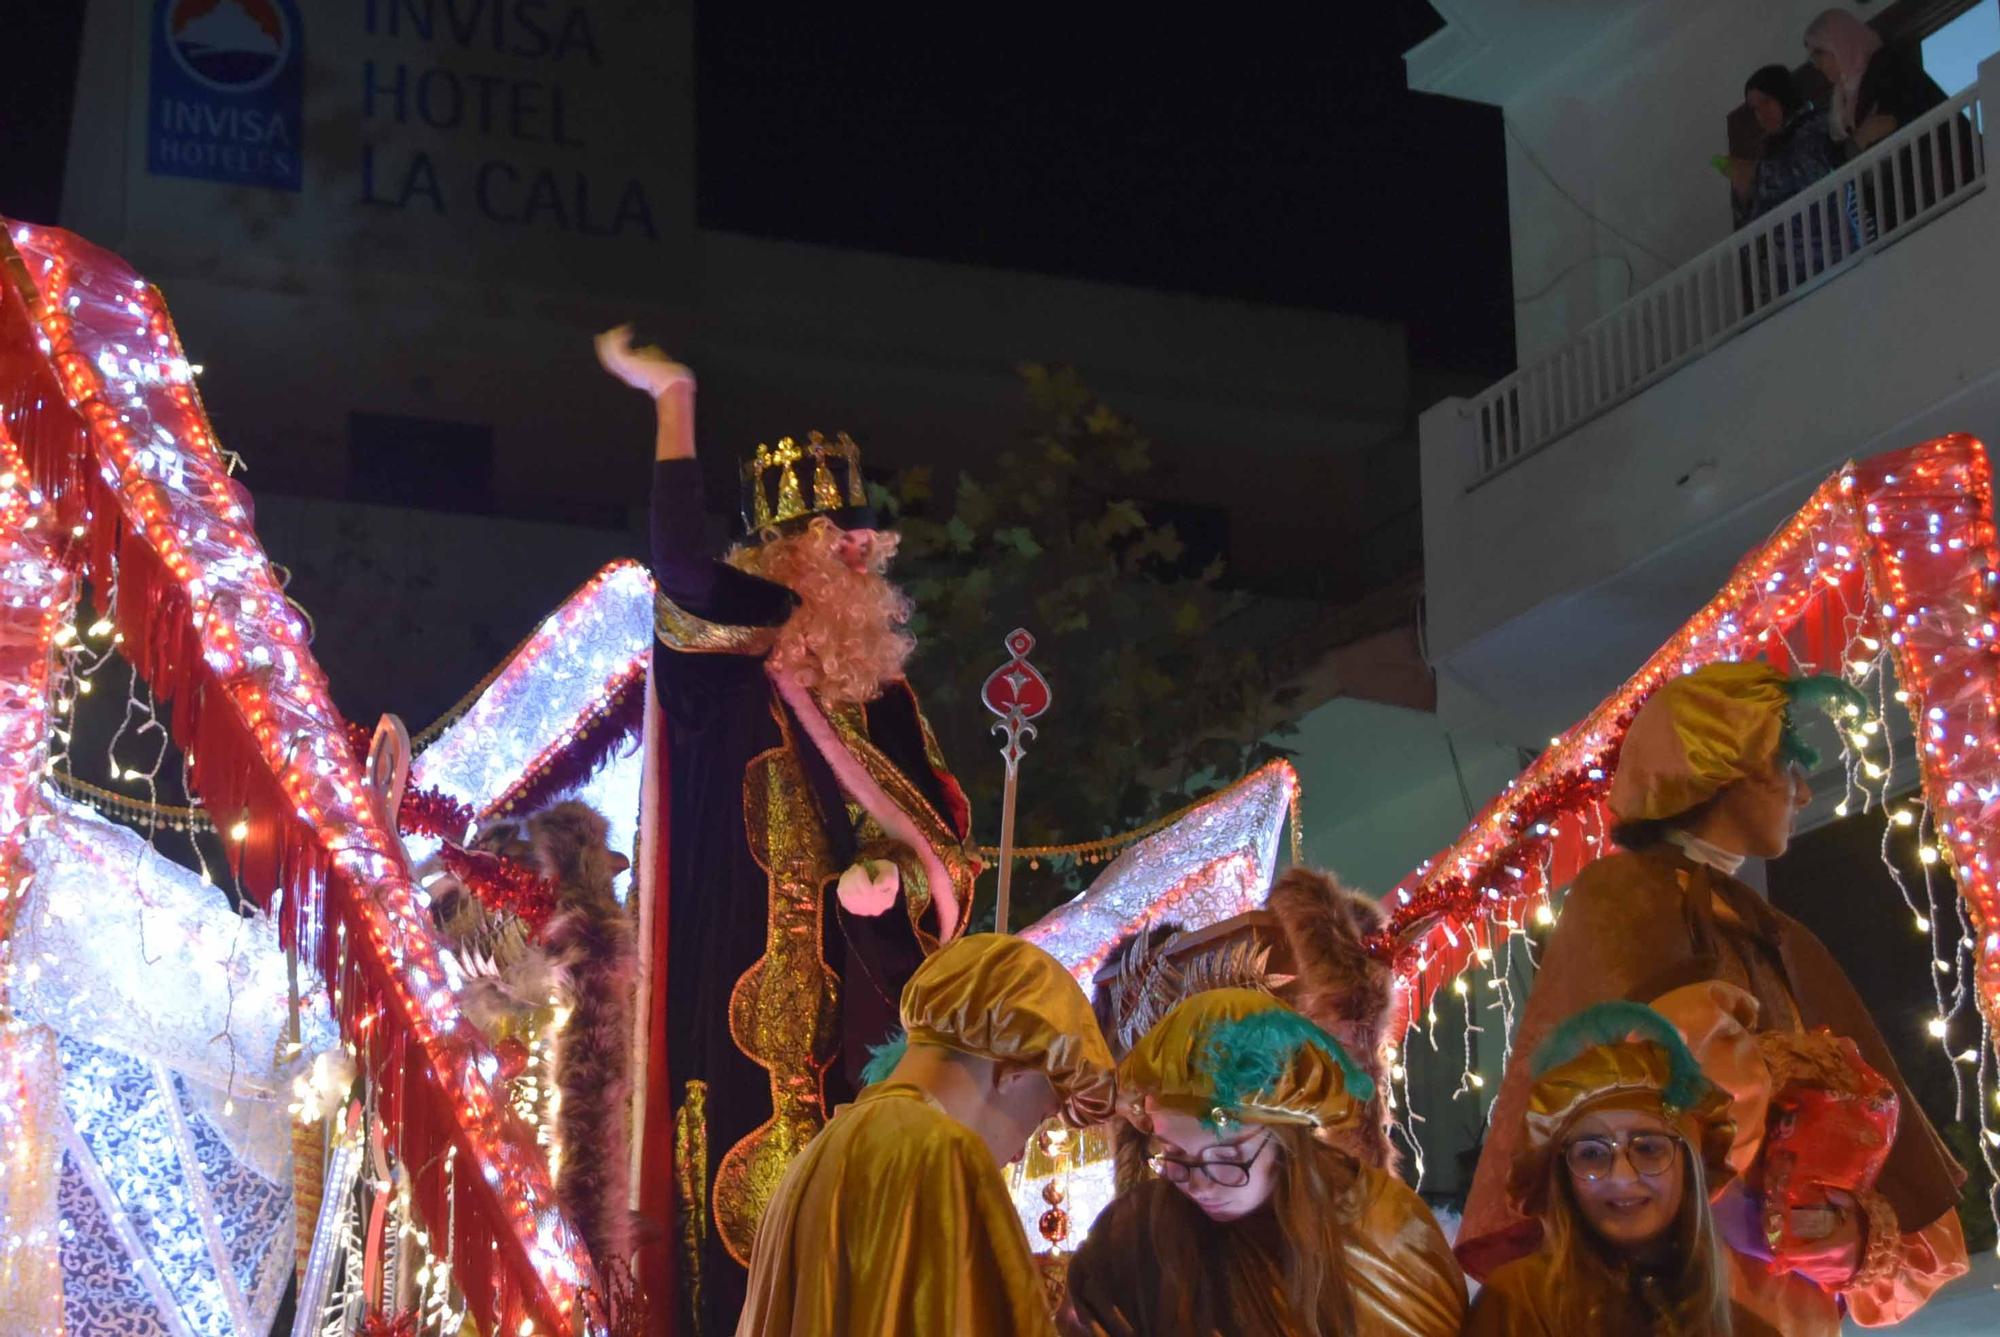 Mira aquí la galería de fotos completa de los Reyes Magos en Santa Eulària